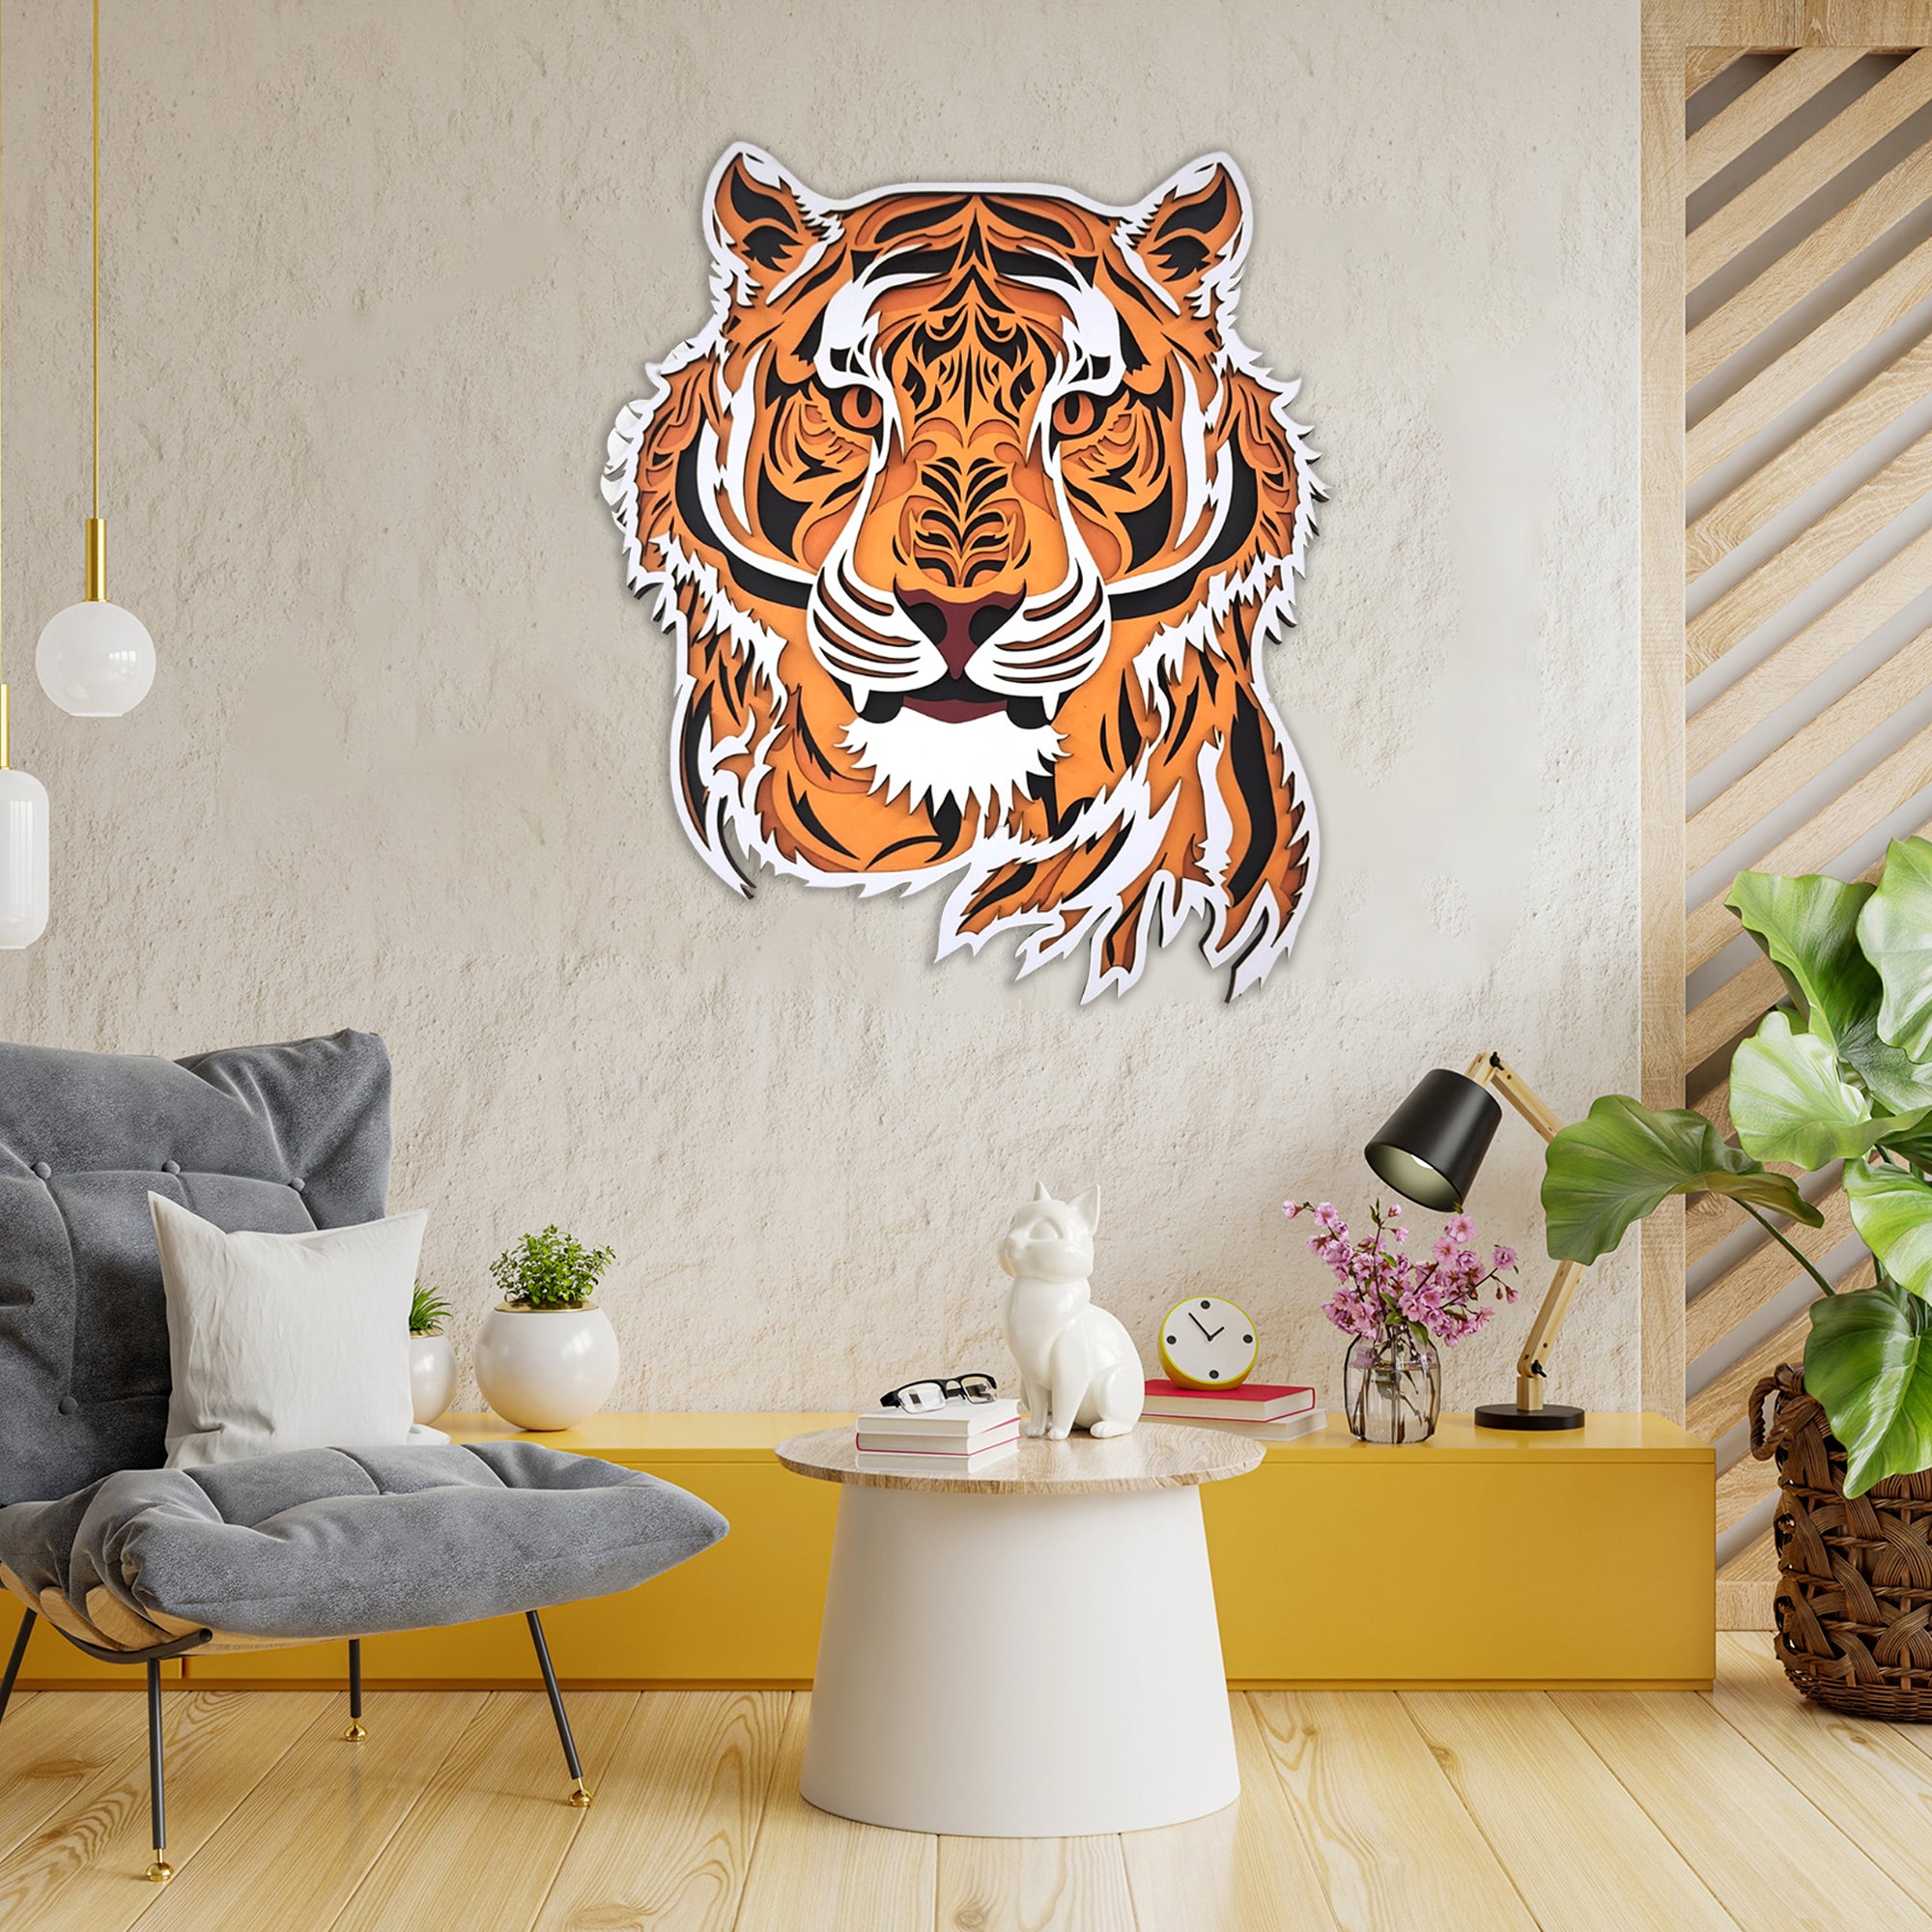 3D Tiger Wall Decor